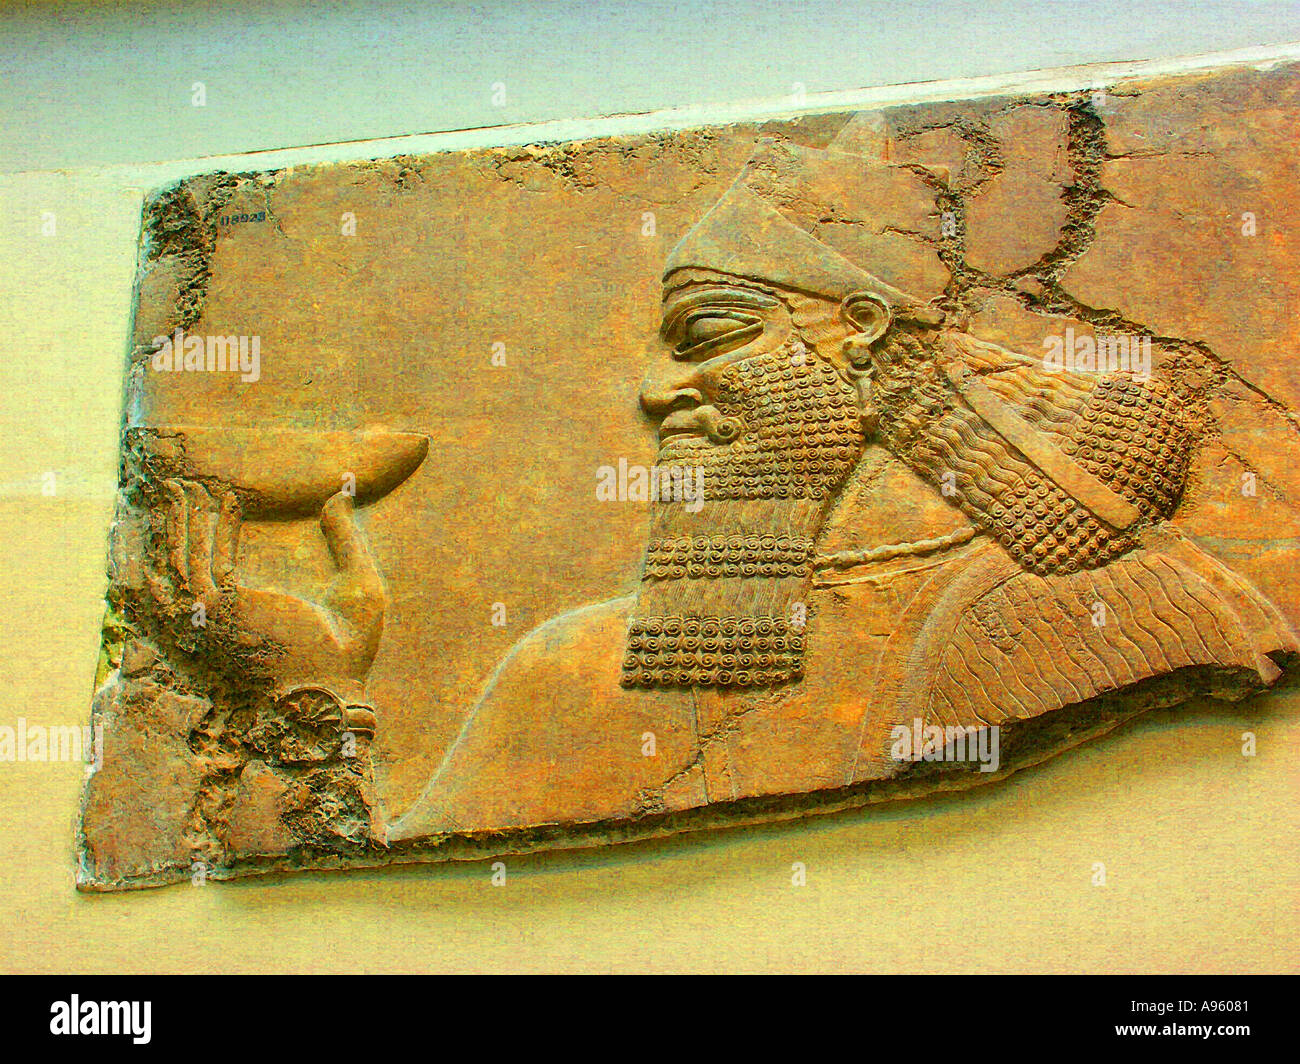 Frise assyrienne au British Museum London Banque D'Images